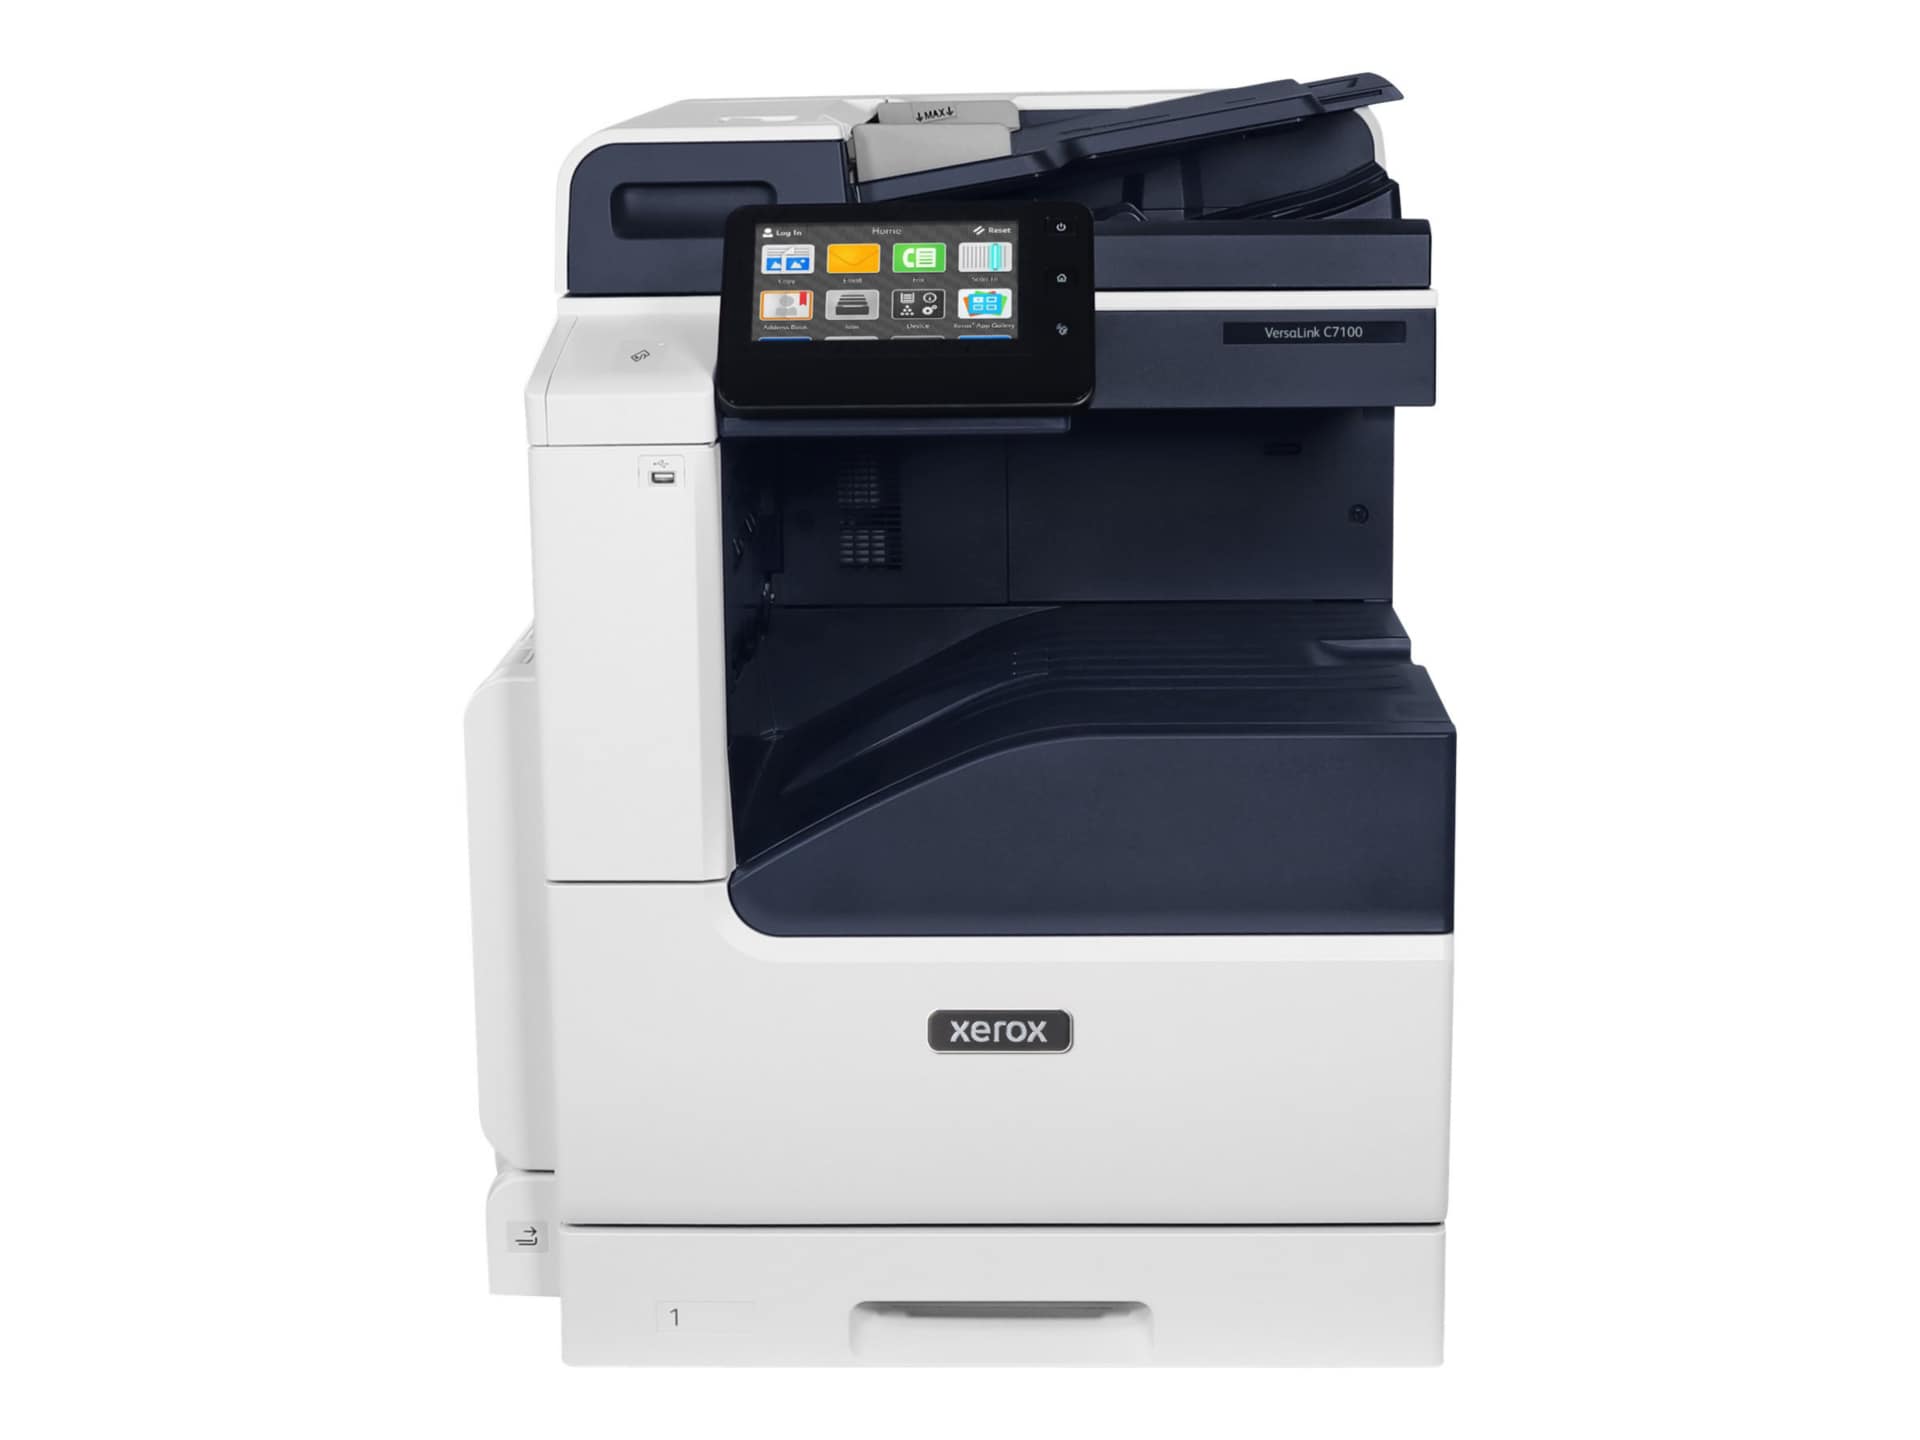 Xerox VersaLink C7130/ENGT2 - multifunction printer - color